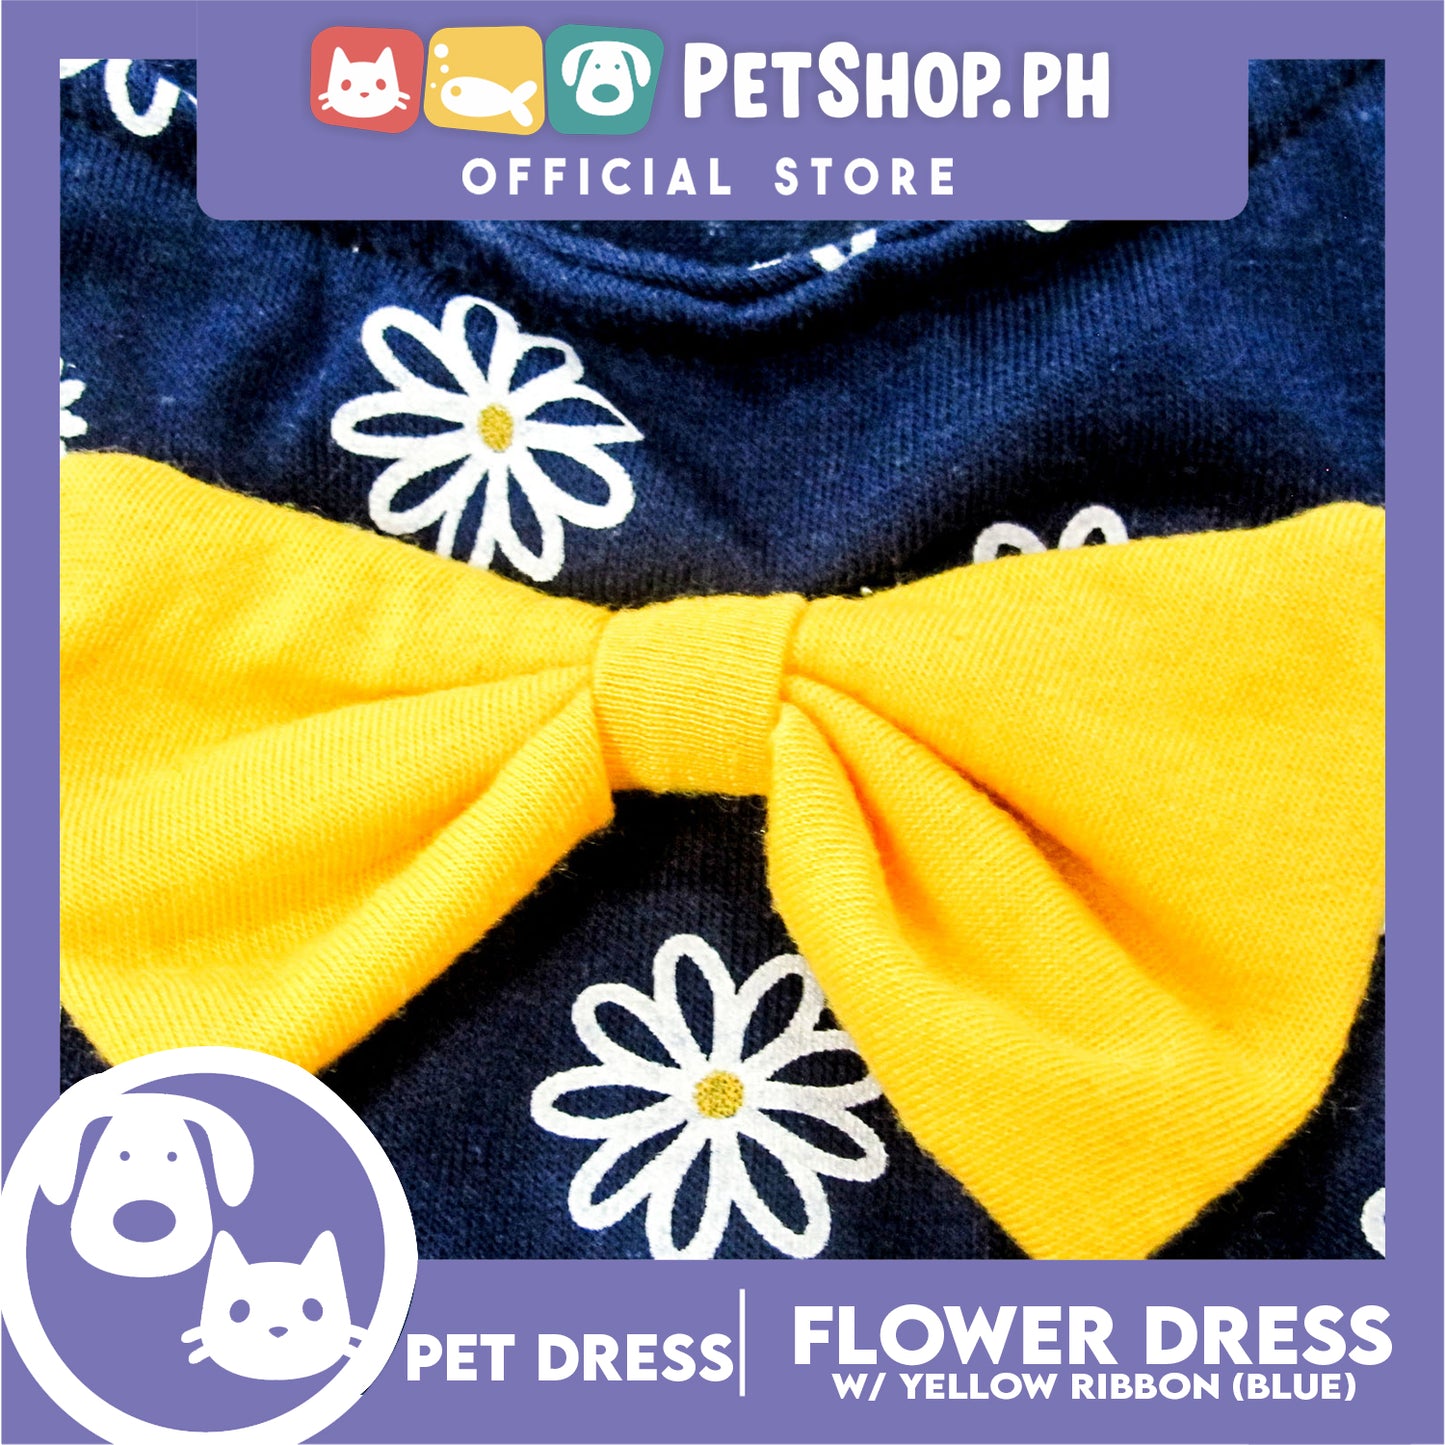 Pet Dress Summer Flower Skirt with Yellow Bowknot Sleeveless (Medium) for Cute Little Dog Pet Clothes, Pet Skirt and Girl Dog Dress